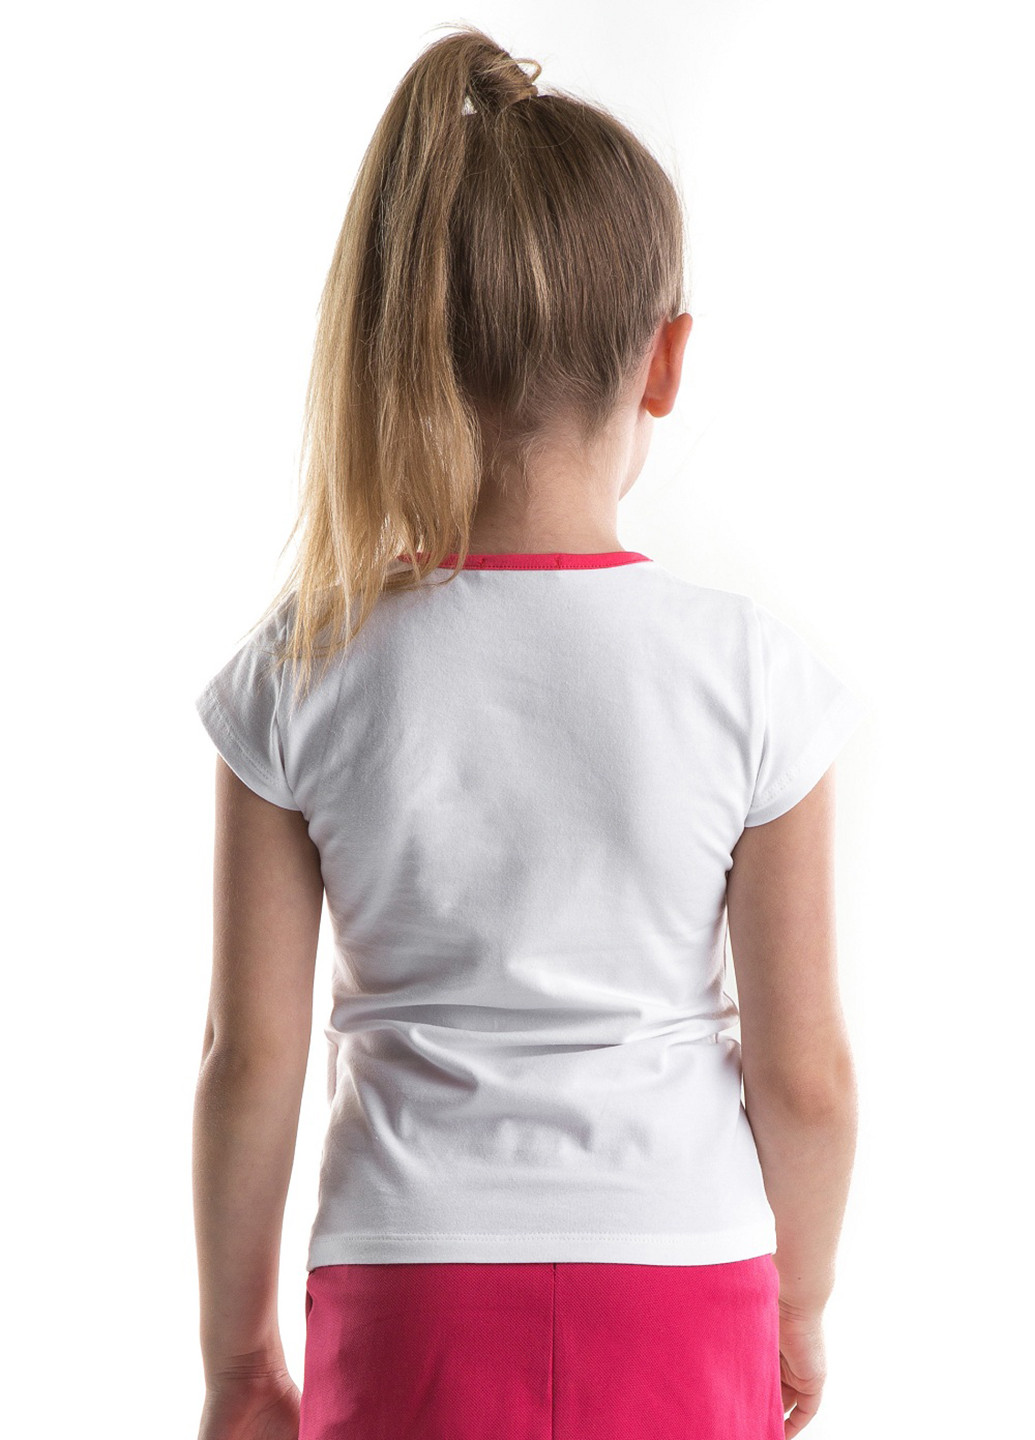 Белая летняя футболка с коротким рукавом Wojcik